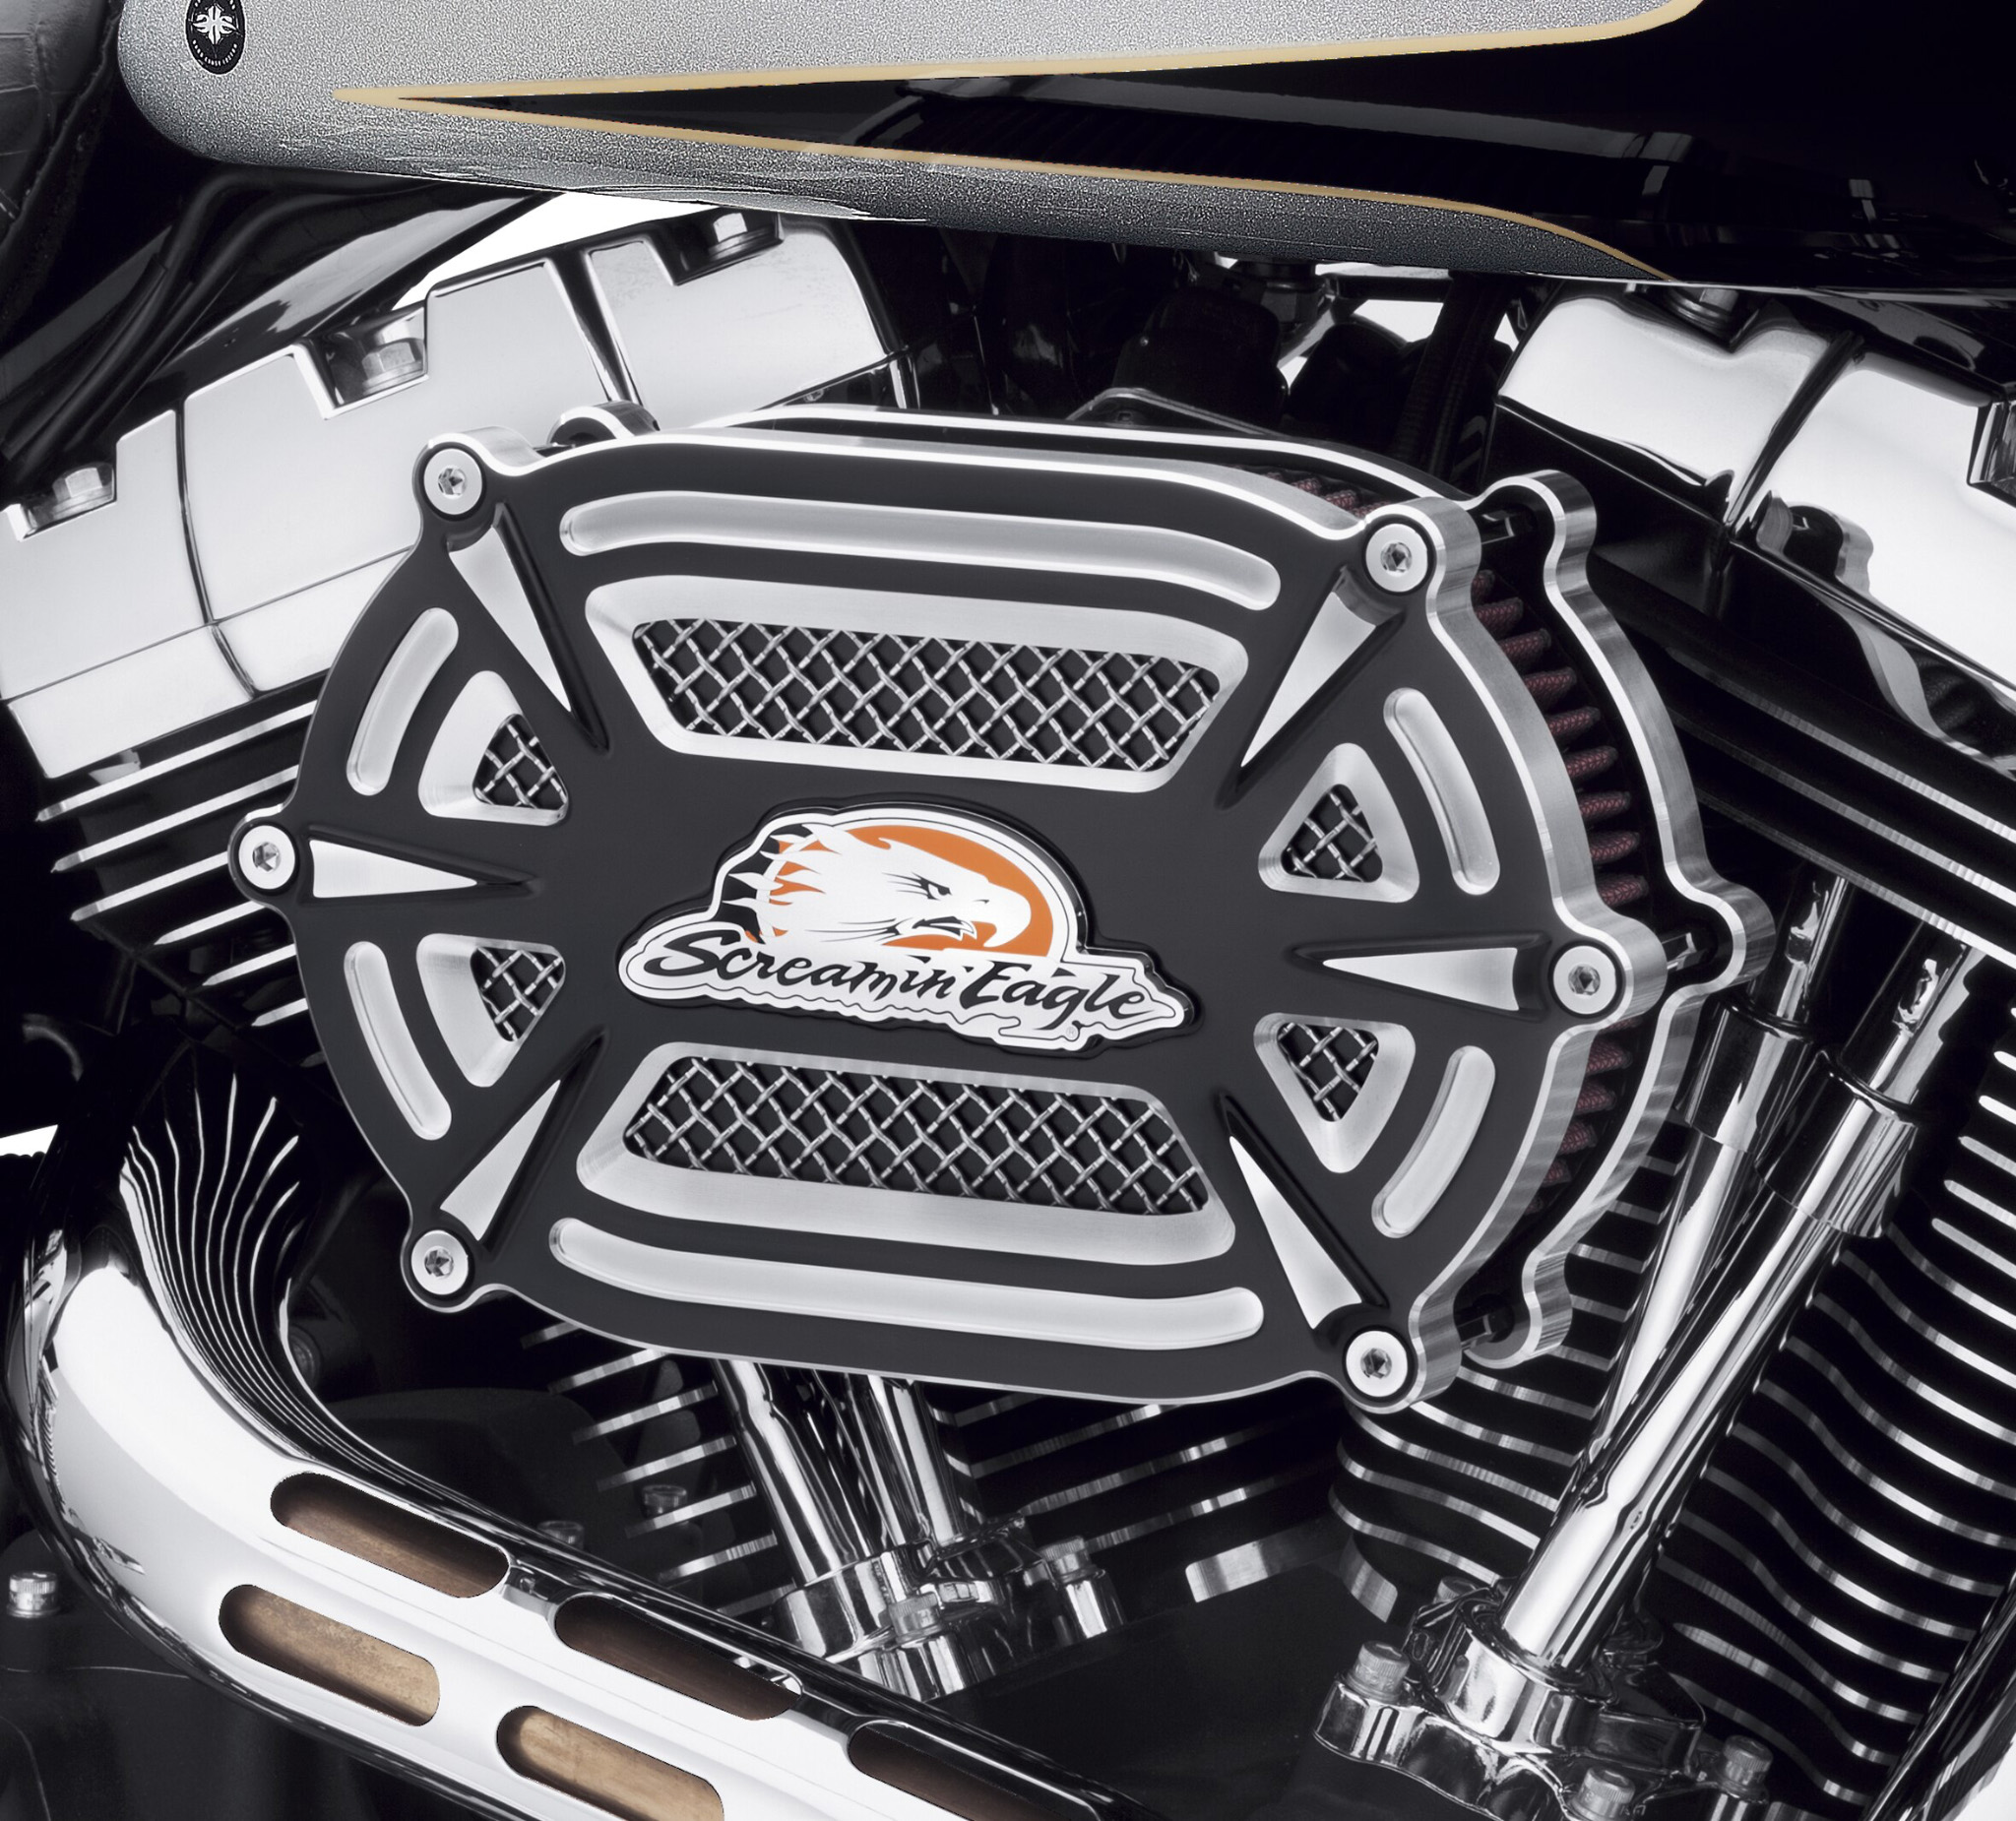 Screamin Eagle Extreme Billet Ventilator Air Cleaner Kit 29400224 Harley Davidson Usa